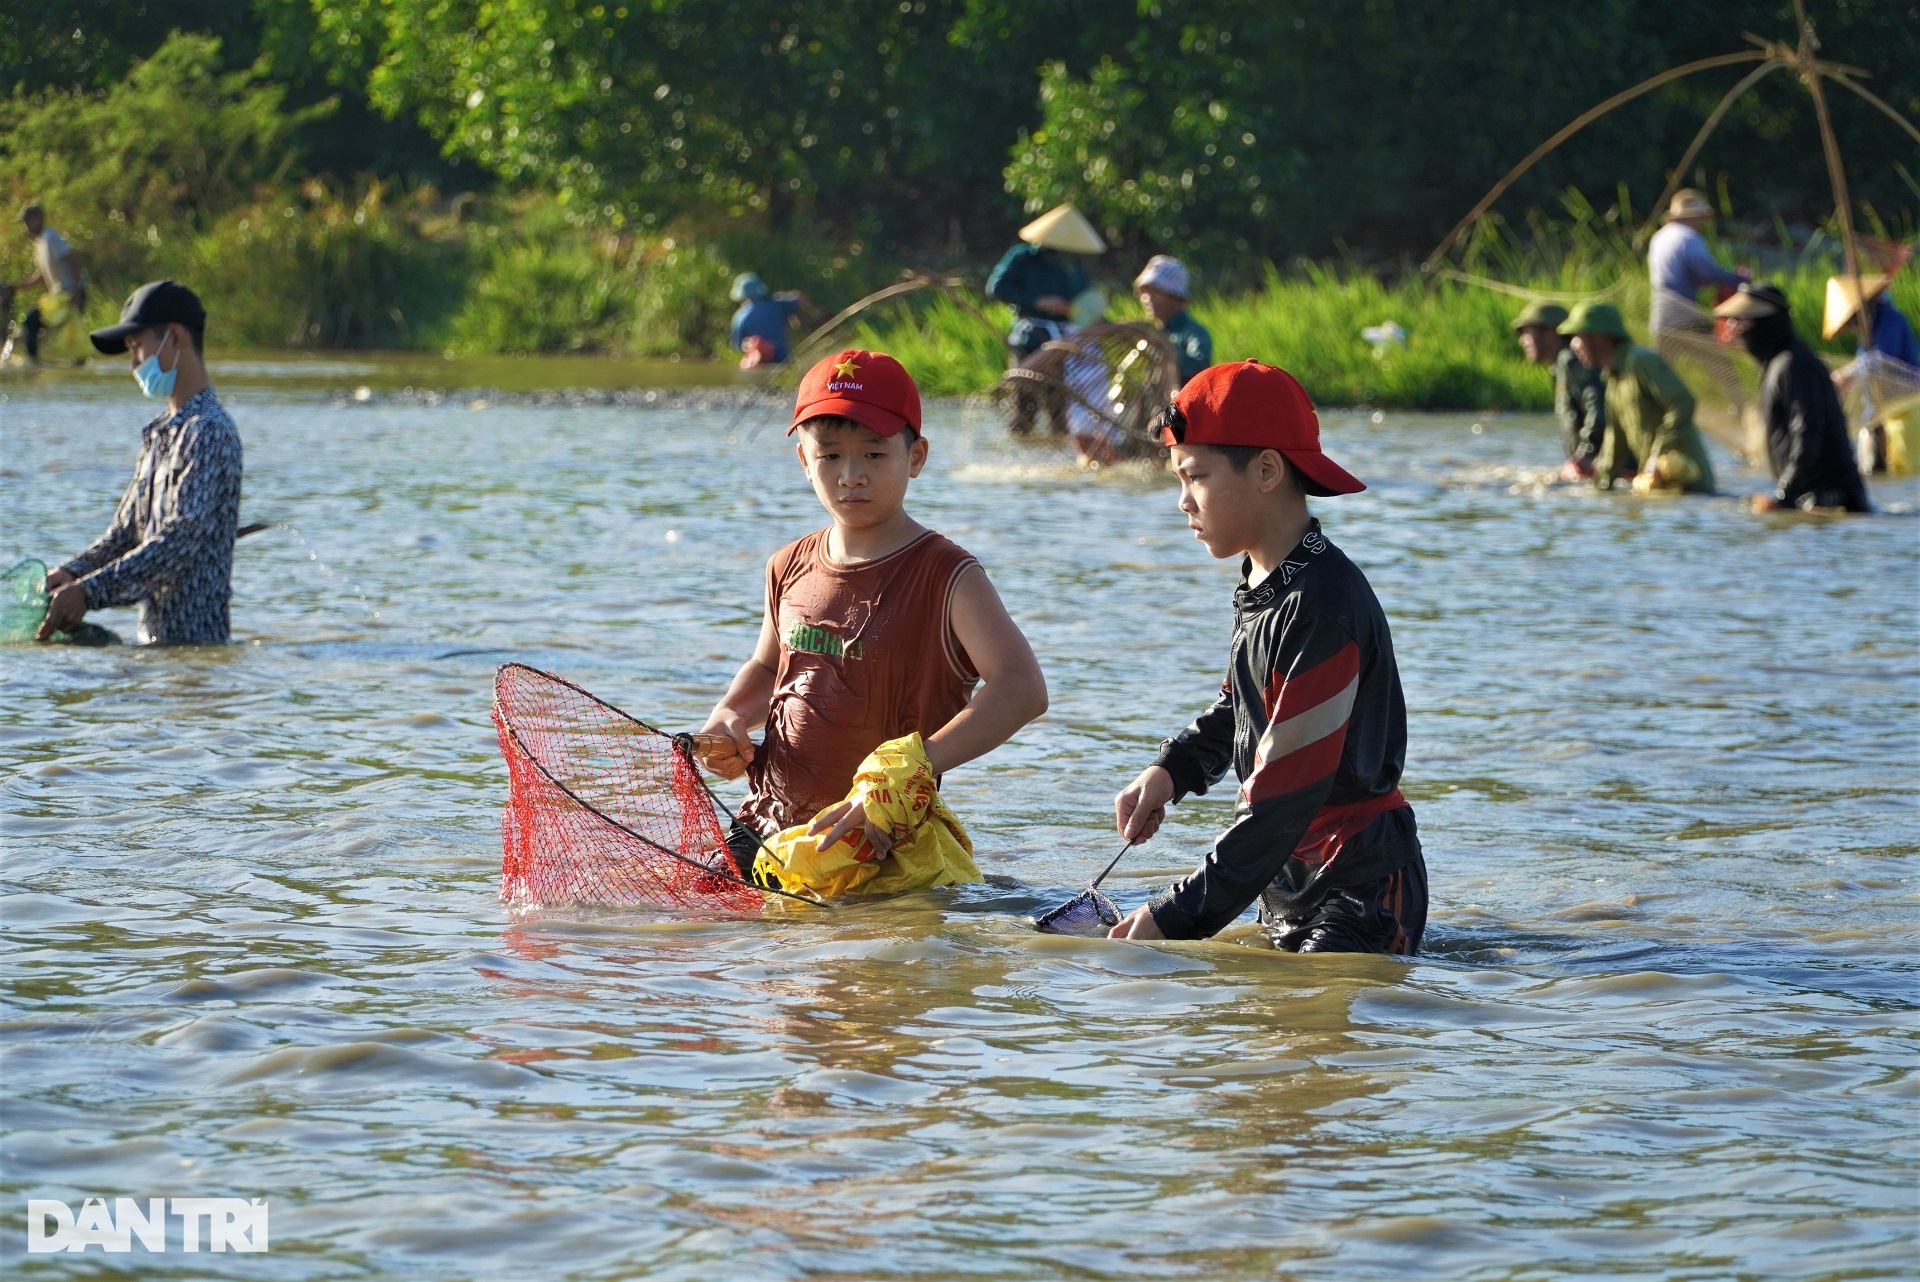 Hàng trăm người hò reo đánh bắt cá tại lễ hội hơn 300 năm tuổi - 9